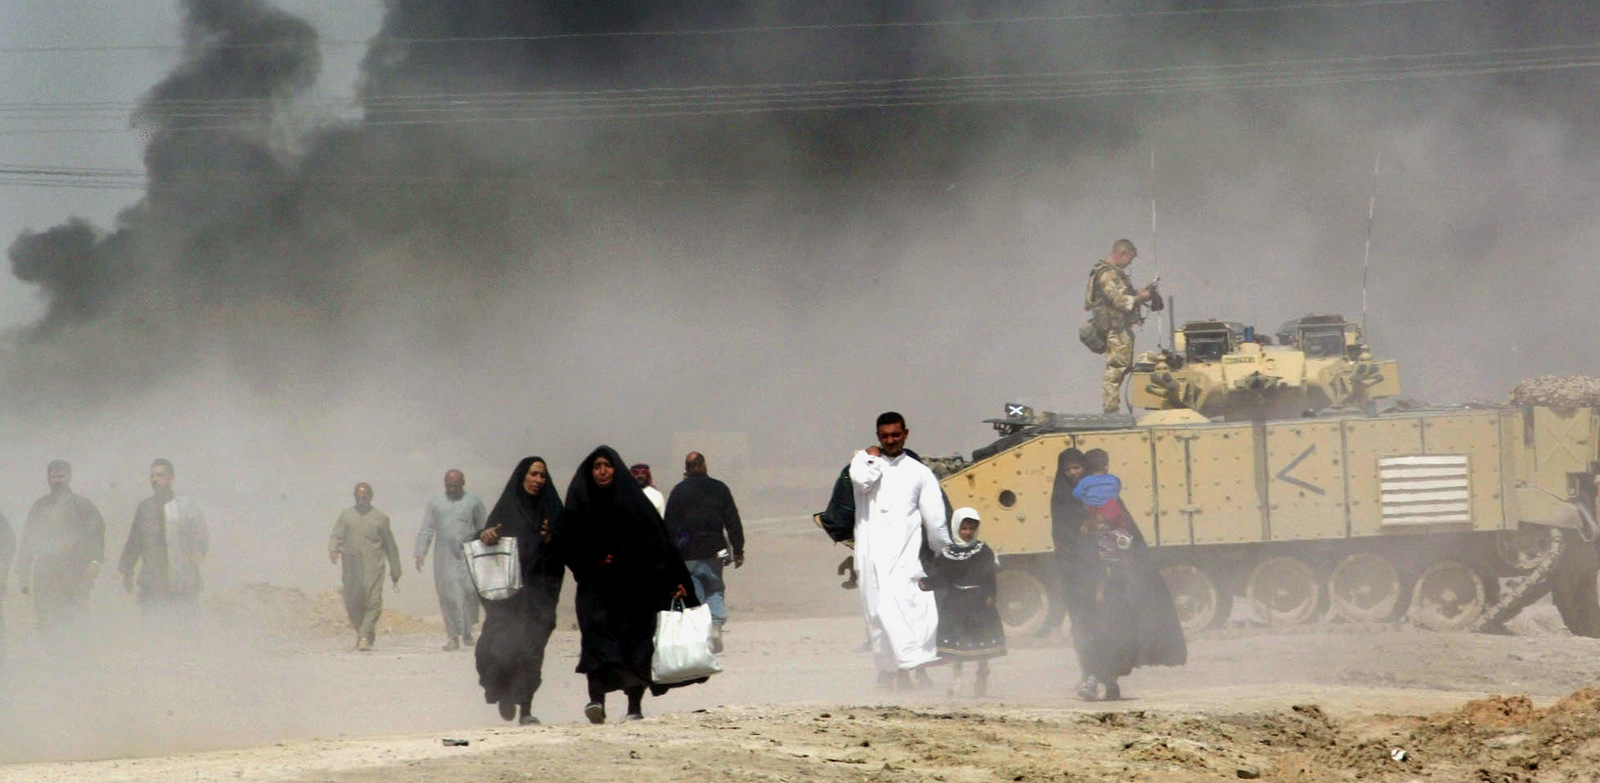 Los iraquíes pasan junto a un tanque británico mientras huyen de Basora, al sur de Irak, mientras el humo que se cierne sobre la ciudad se puede ver en la distancia, 29 de marzo de 2003. (AP / Anja Niedringhaus)